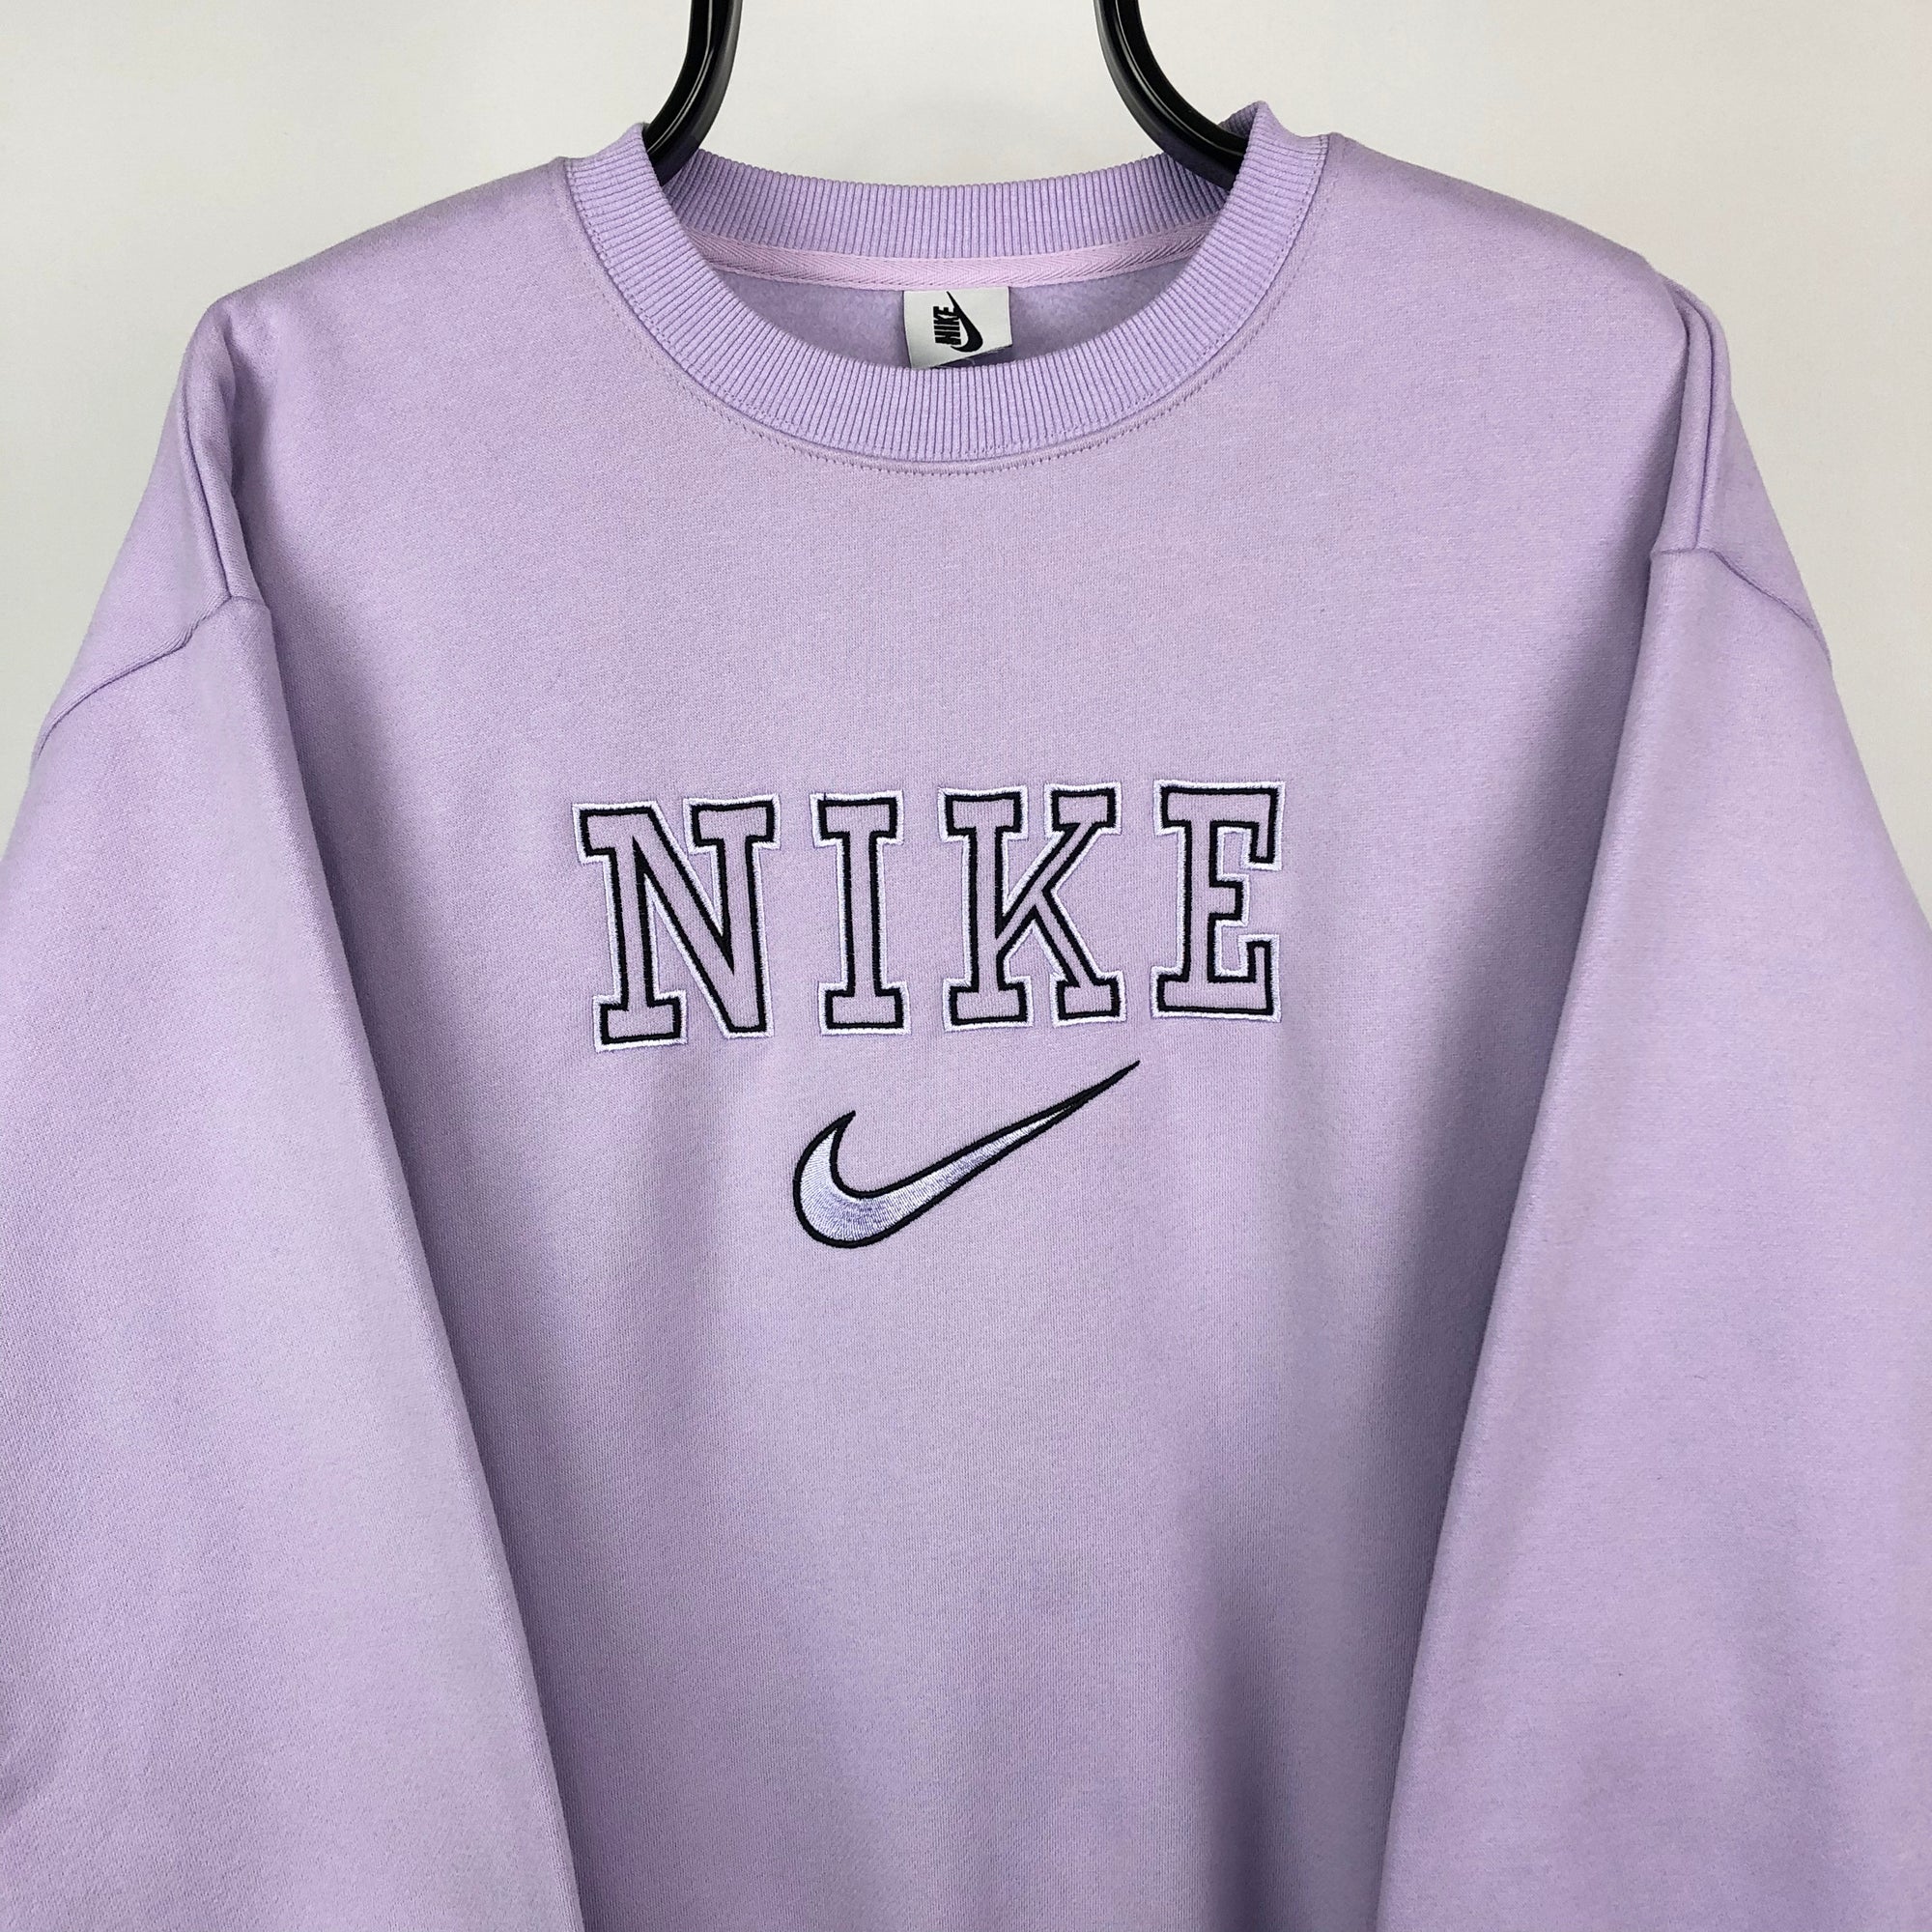 Nike Spellout Sweatshirt in Lilac - Men's Large/Women's XL